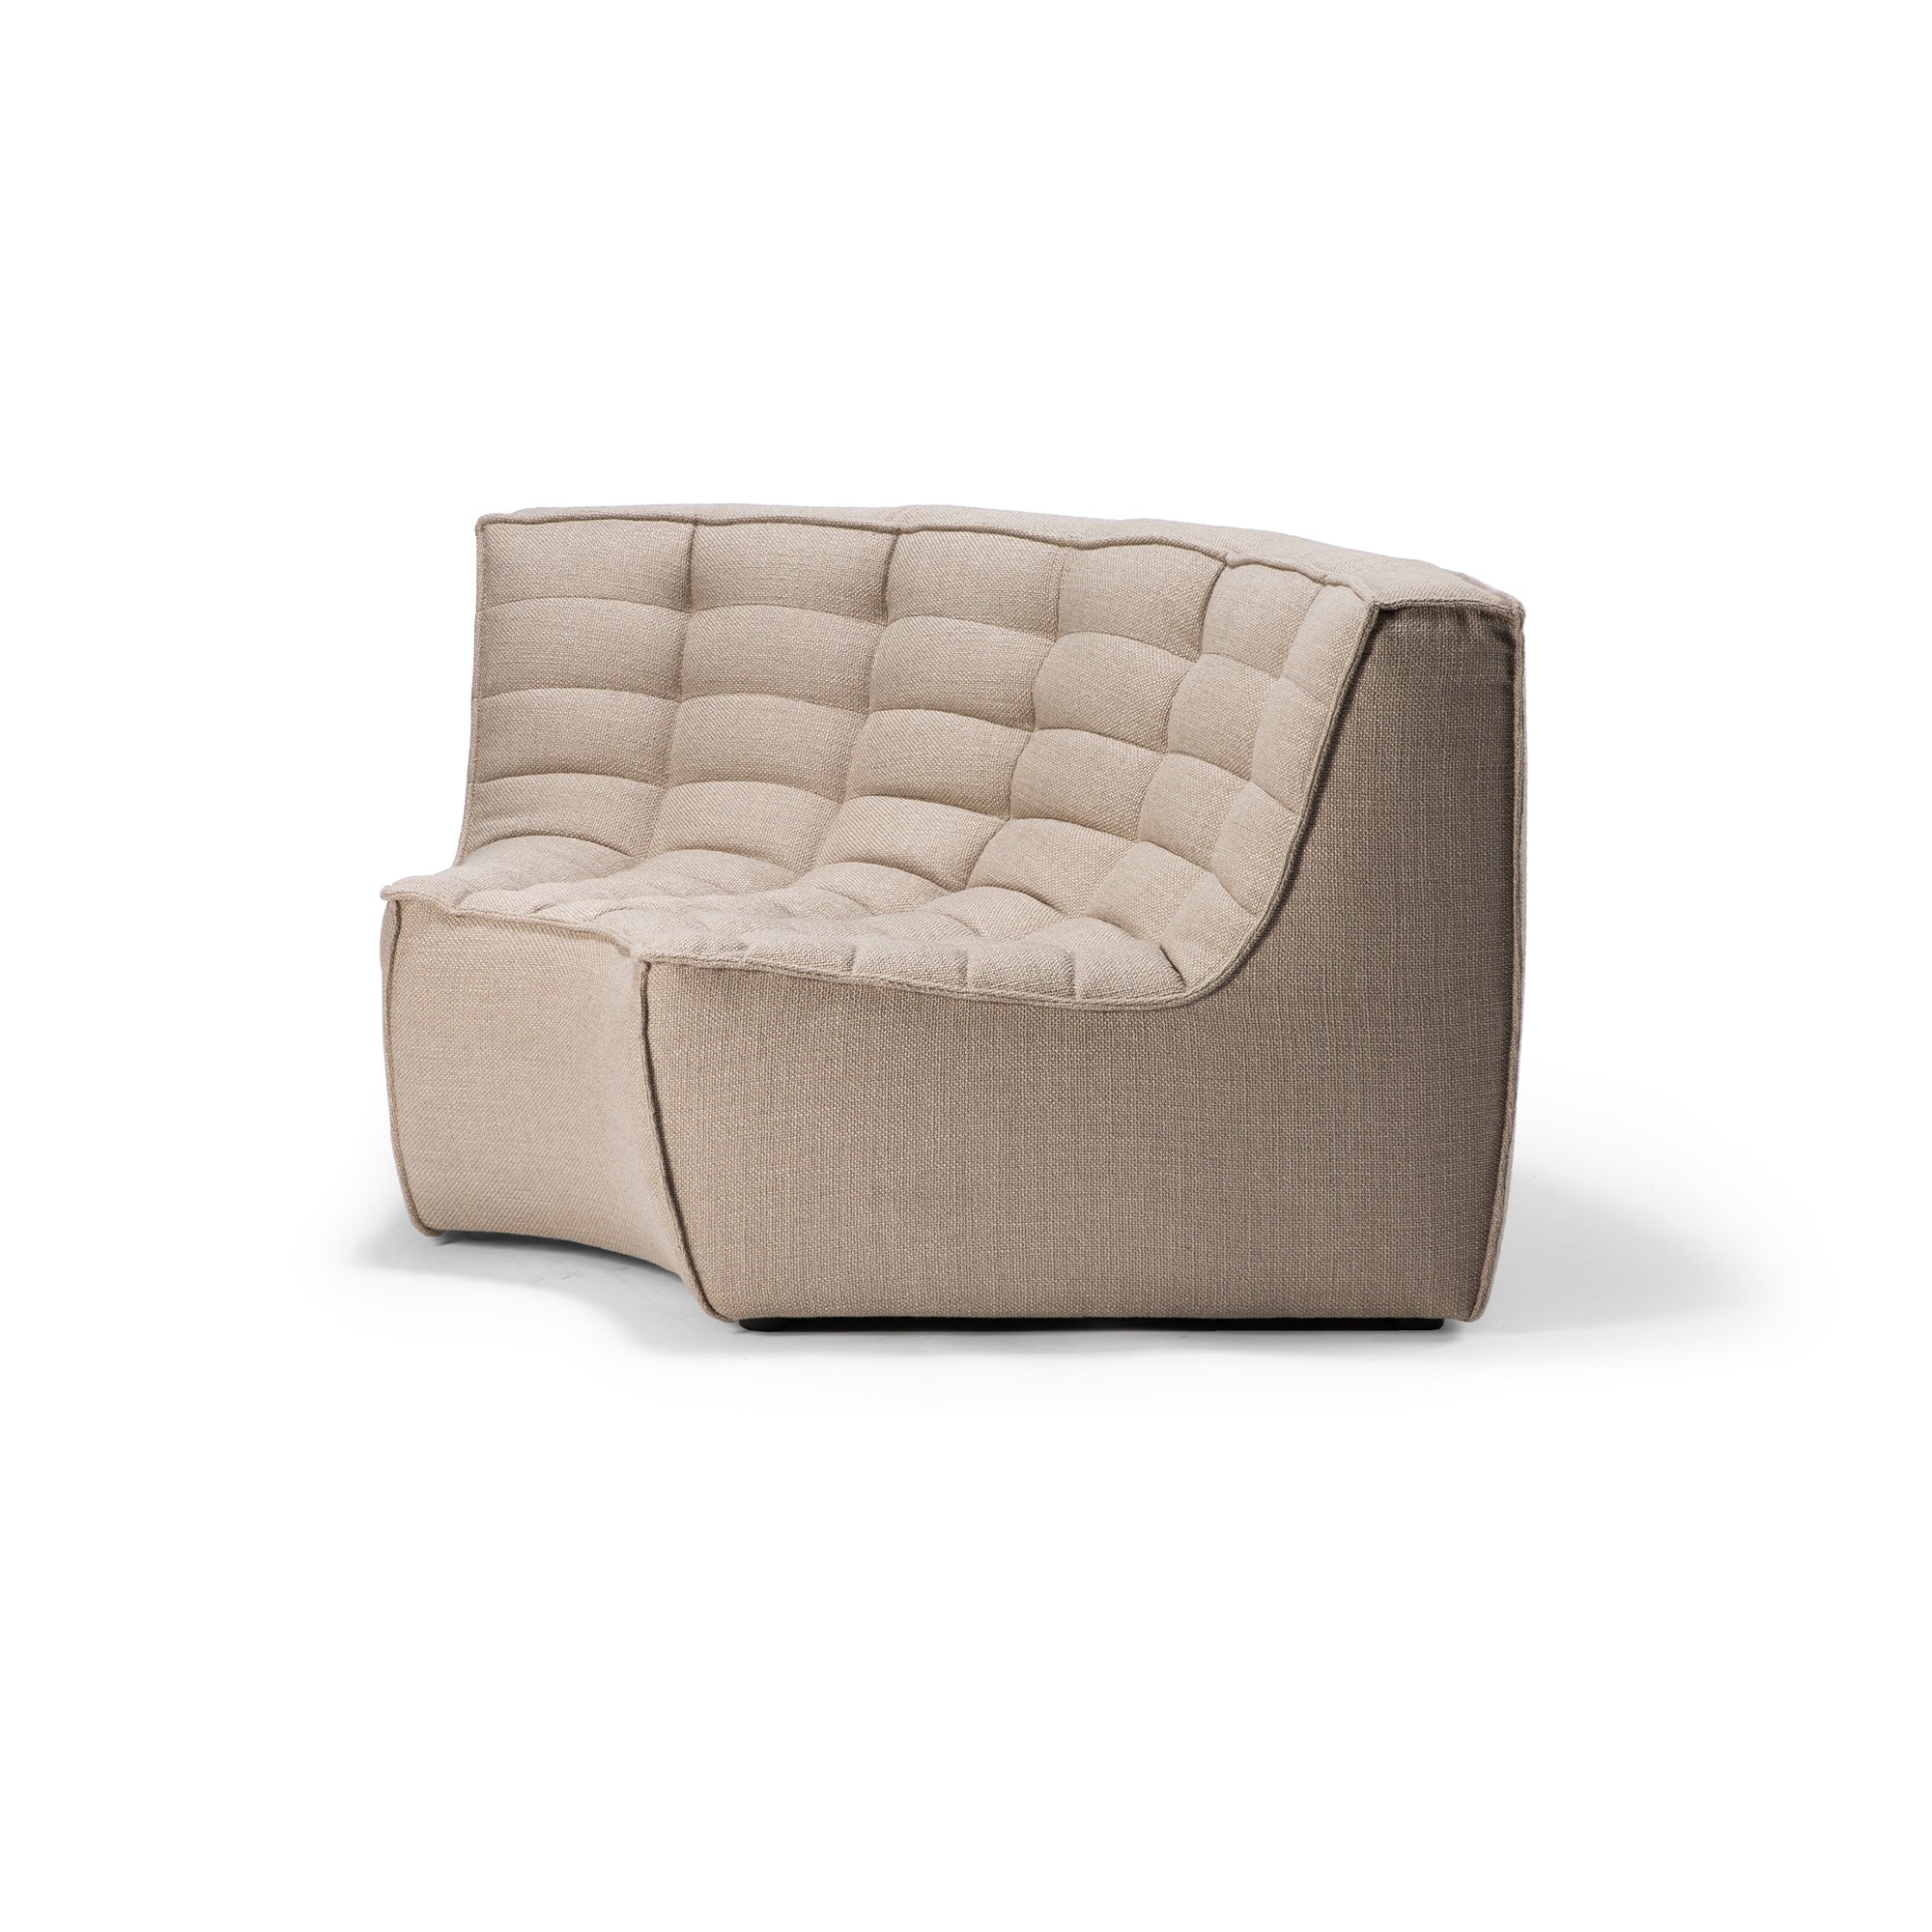 N701 sofa - round corner - beige